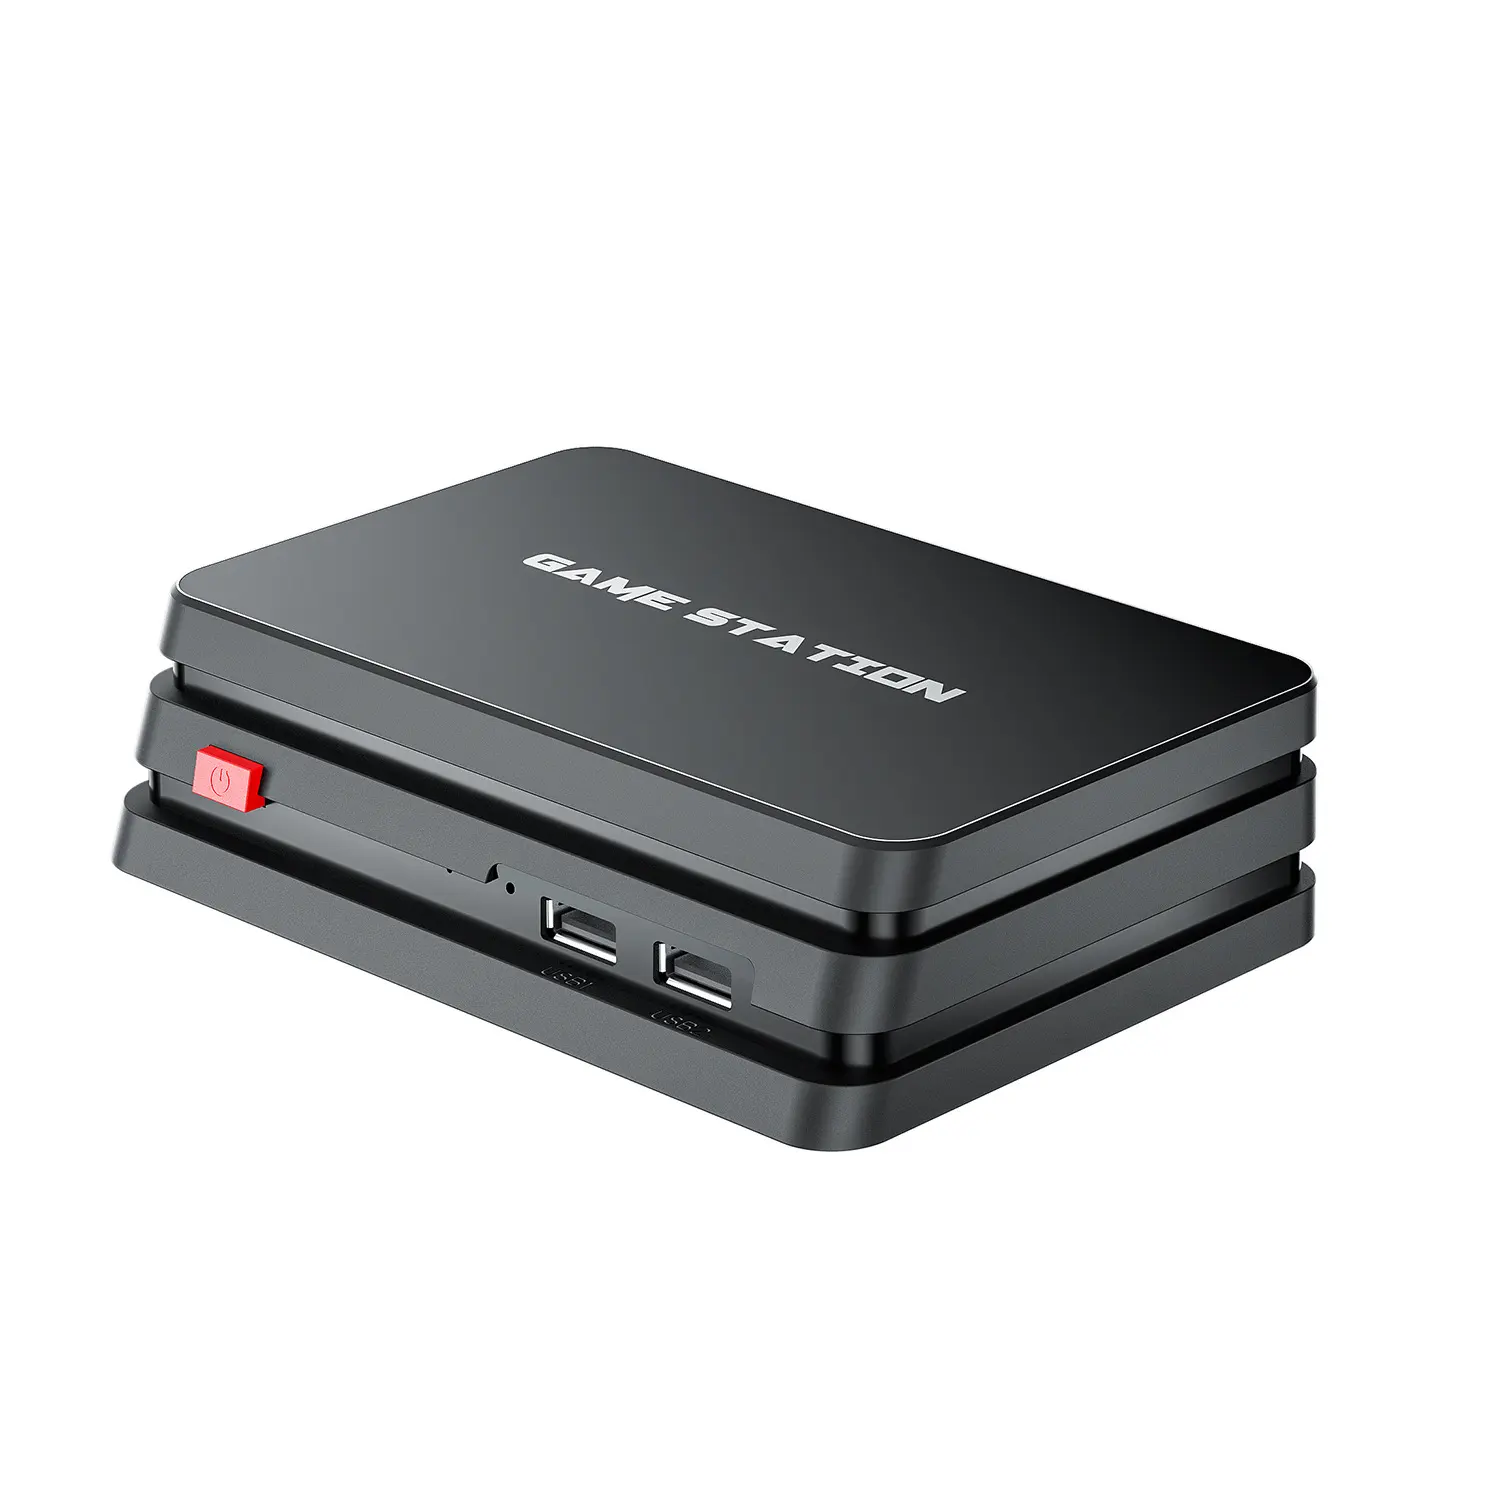 Console de videogame m8 plus com 10000 jogos, gamebox e suporte para 2 jogadores com controle wireless de 2.4g